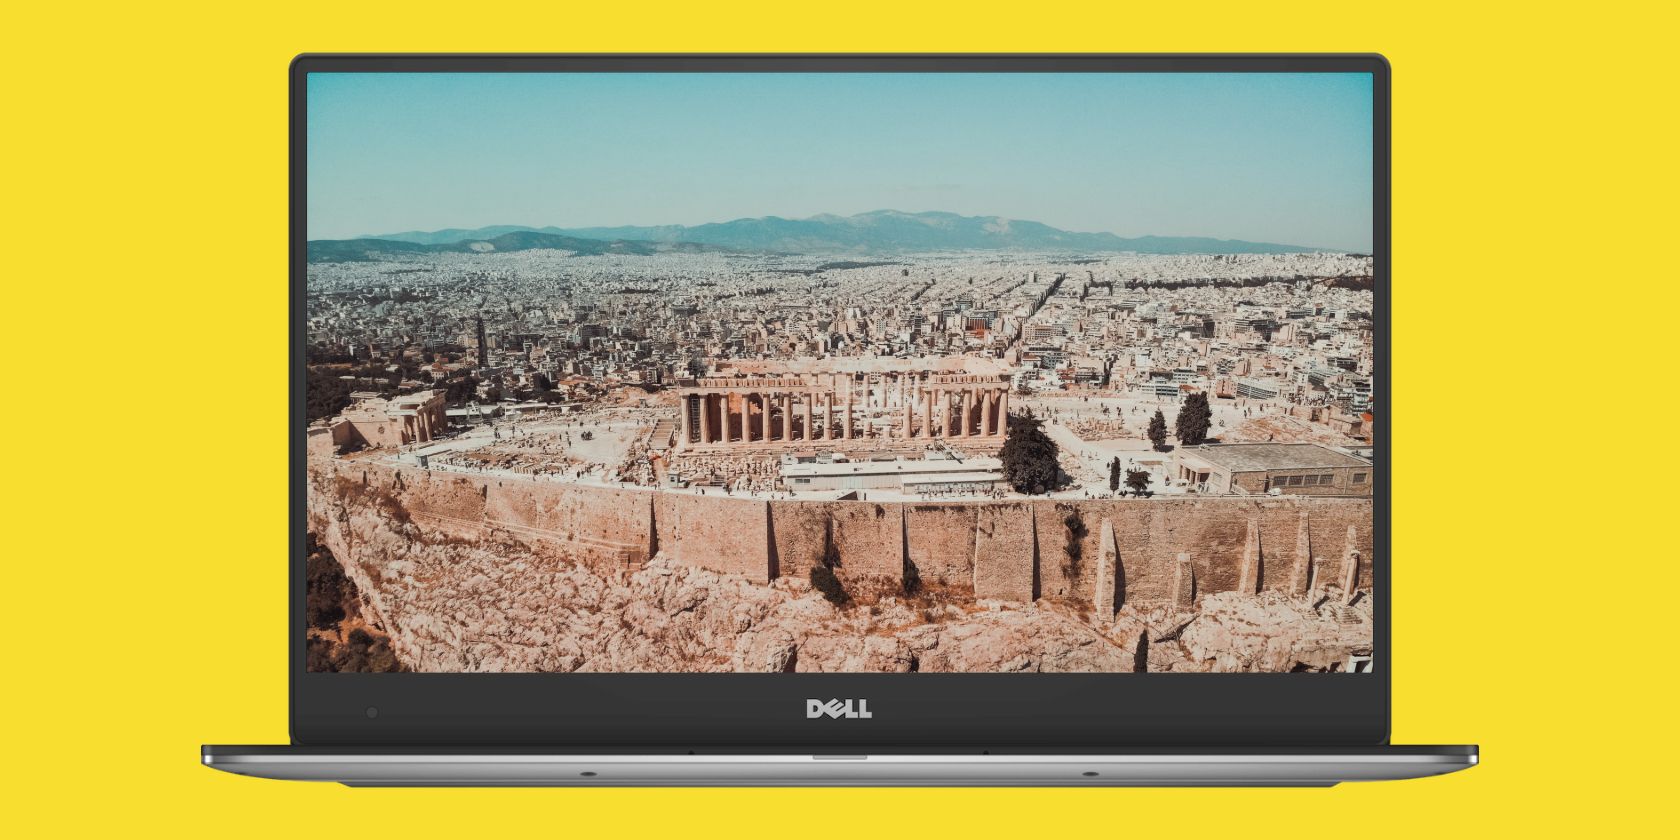 Laptop screen displaying Parthenon Image